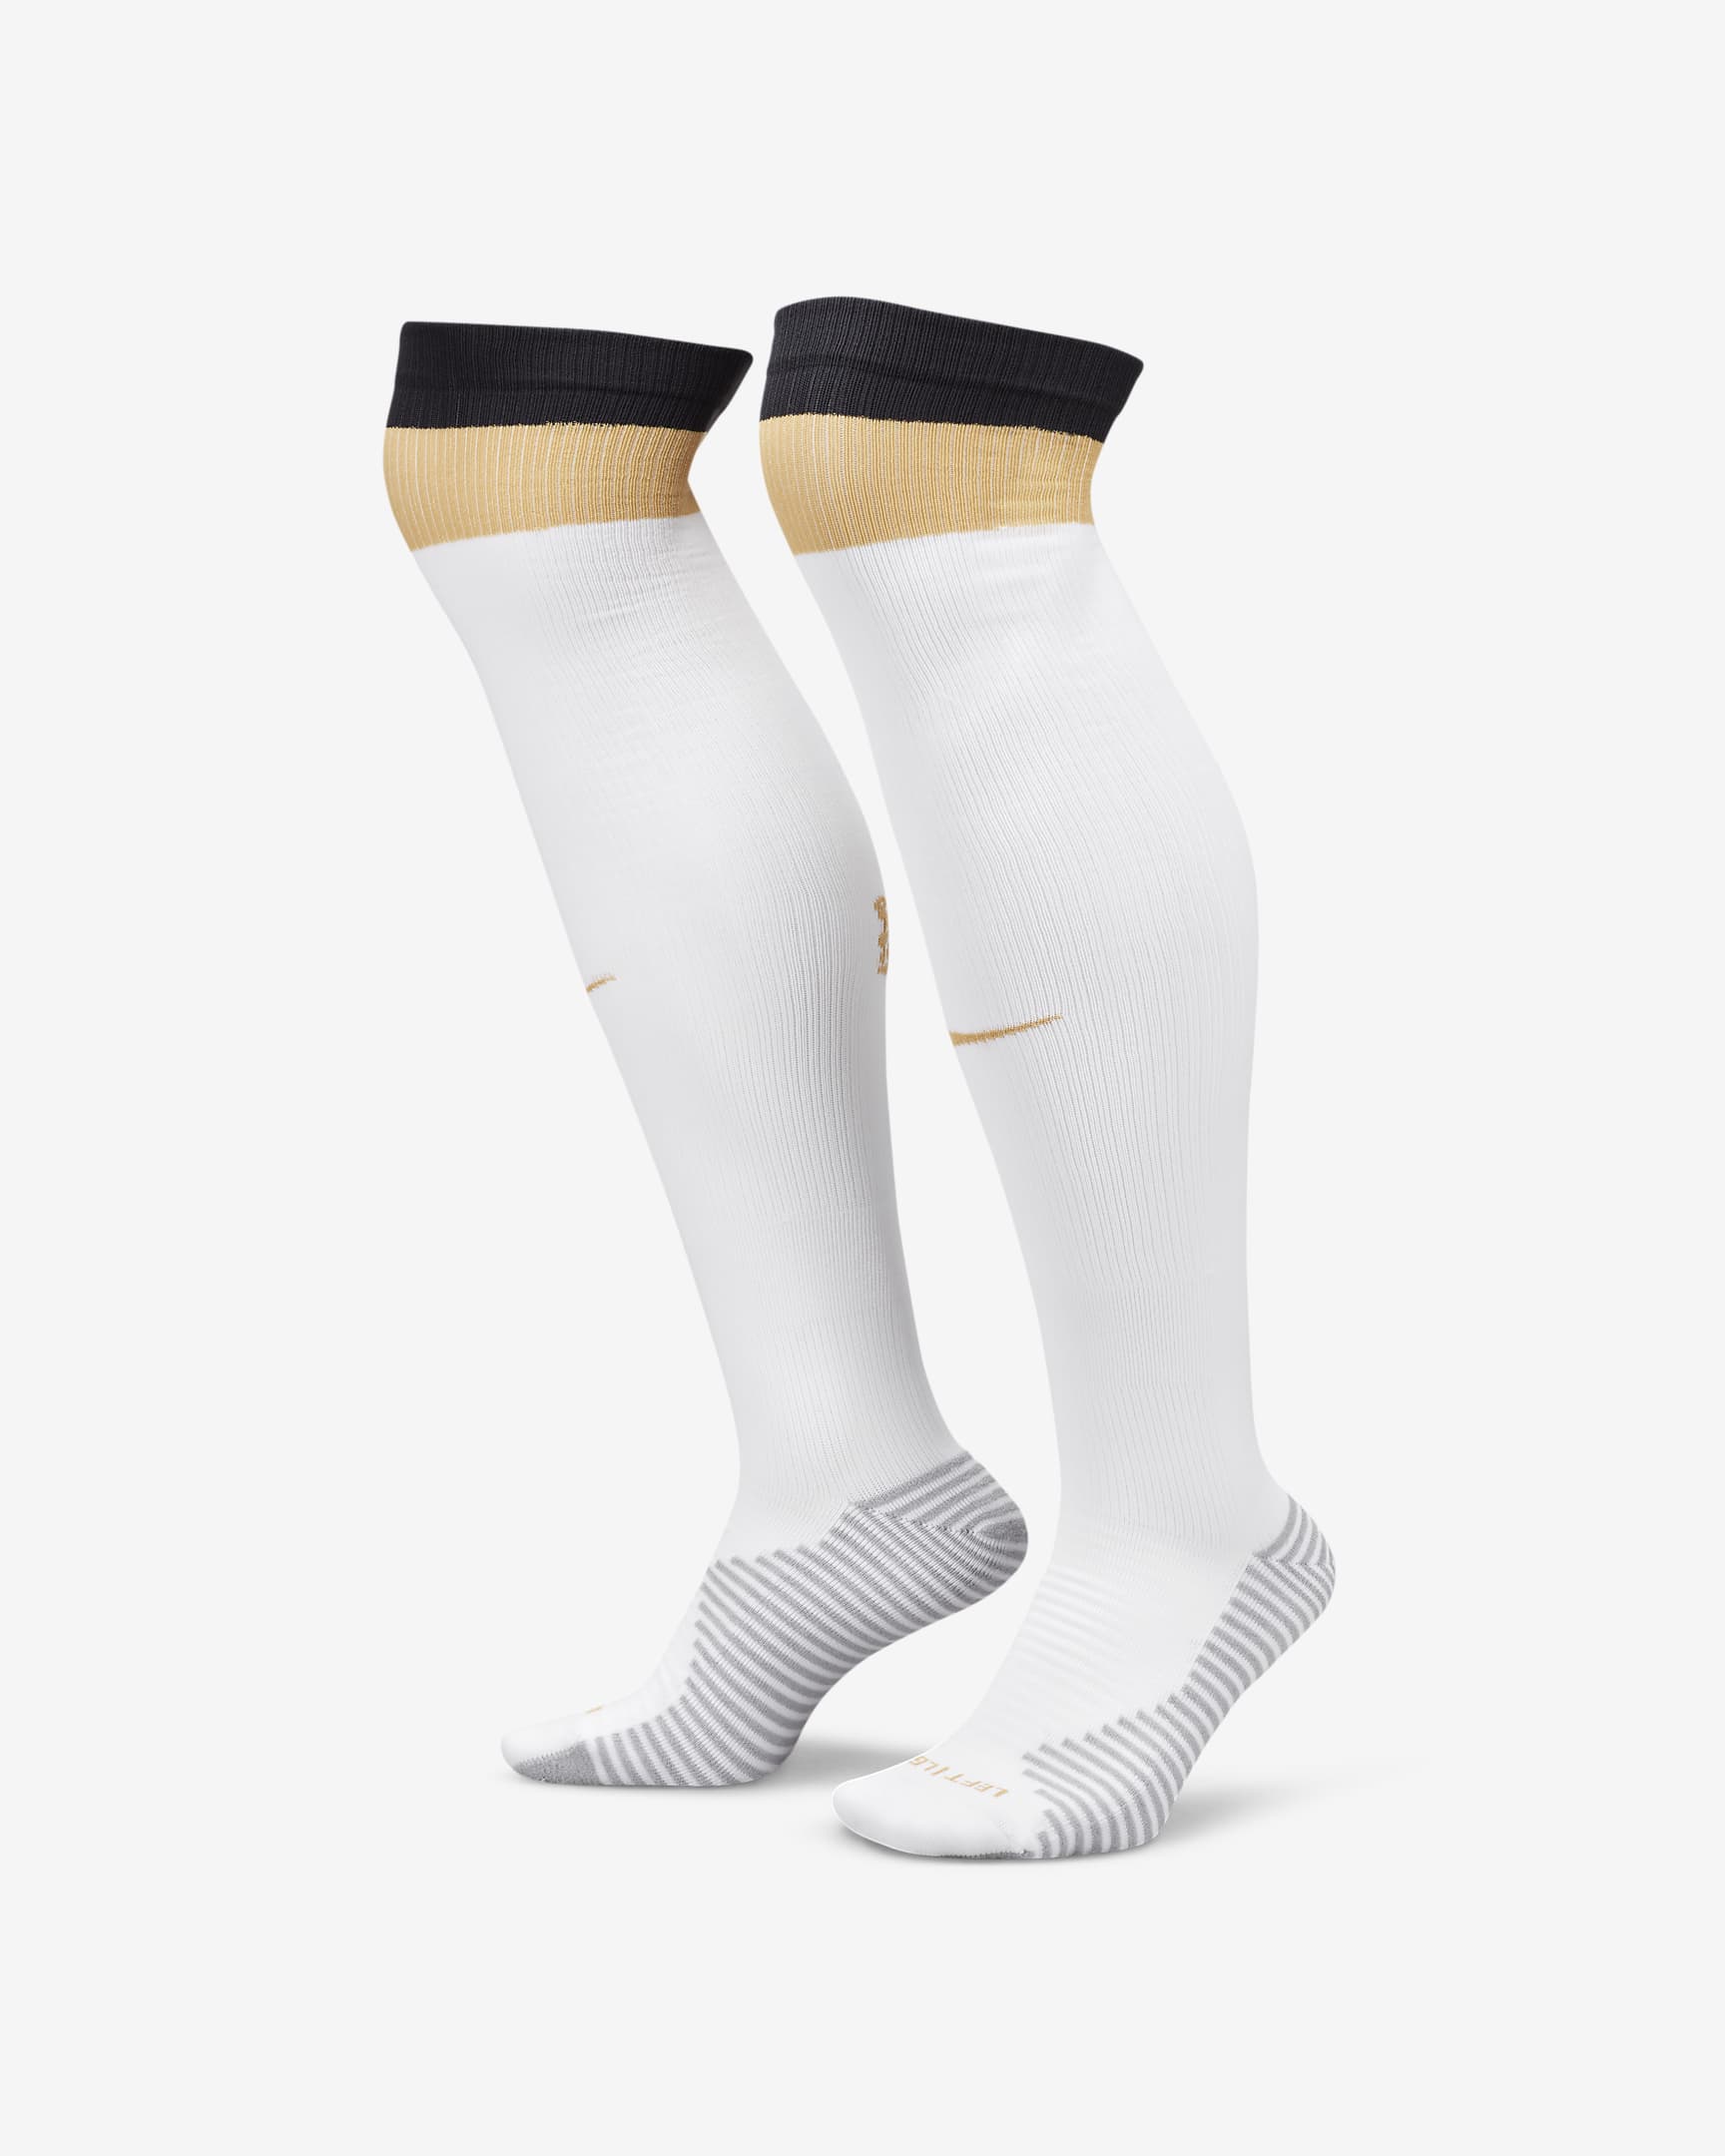 Chelsea F.C. Strike Home/Away Knee-high Football Socks. Nike FI